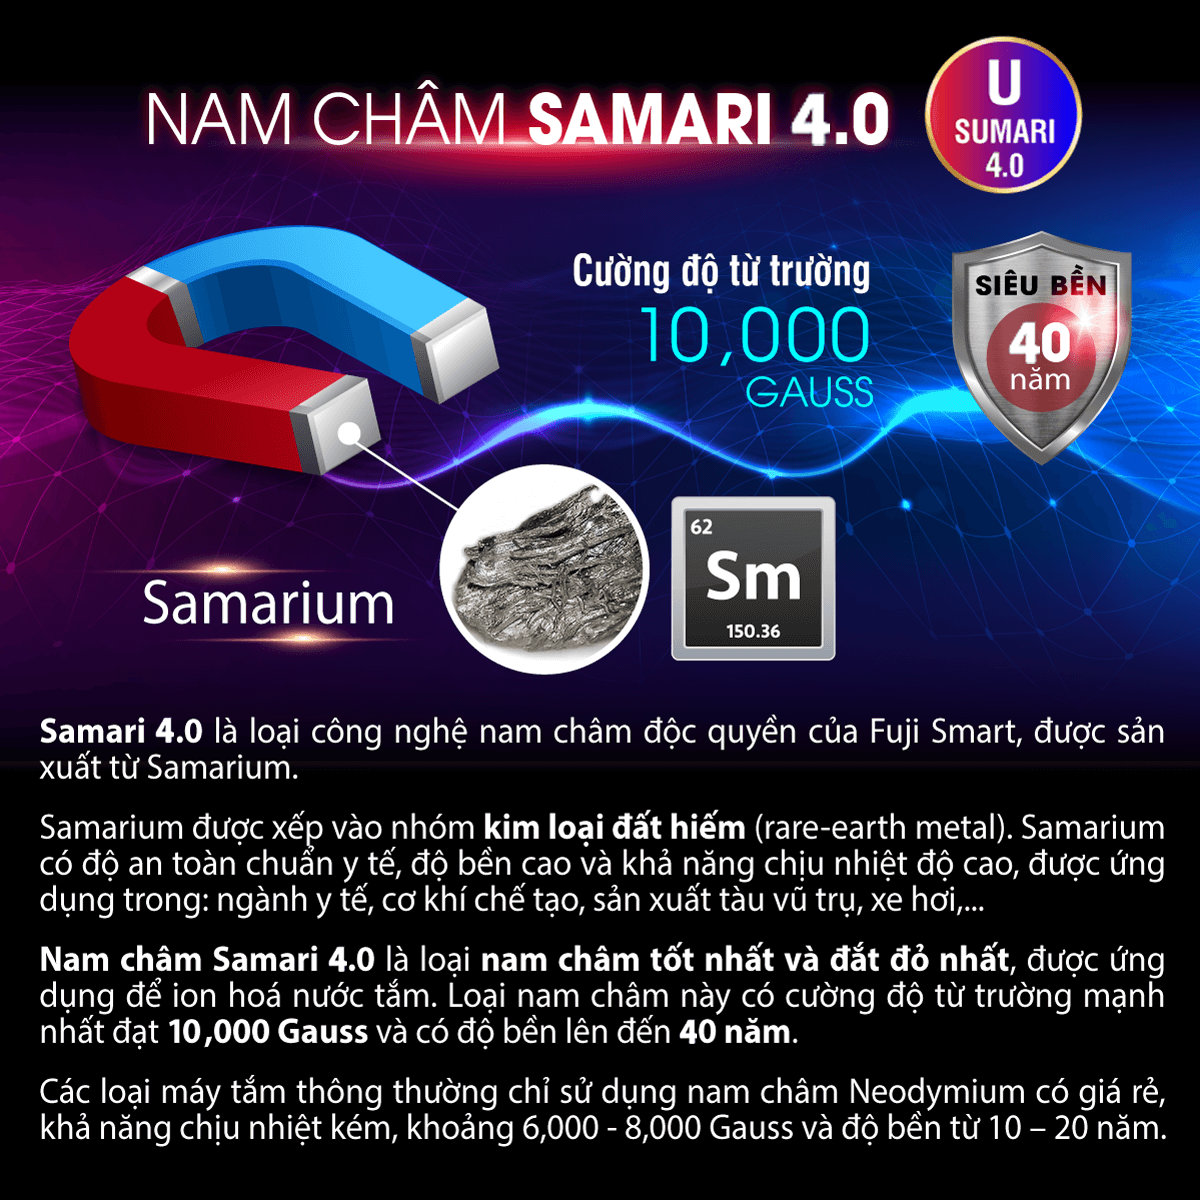 Nam châm Samari 4.0